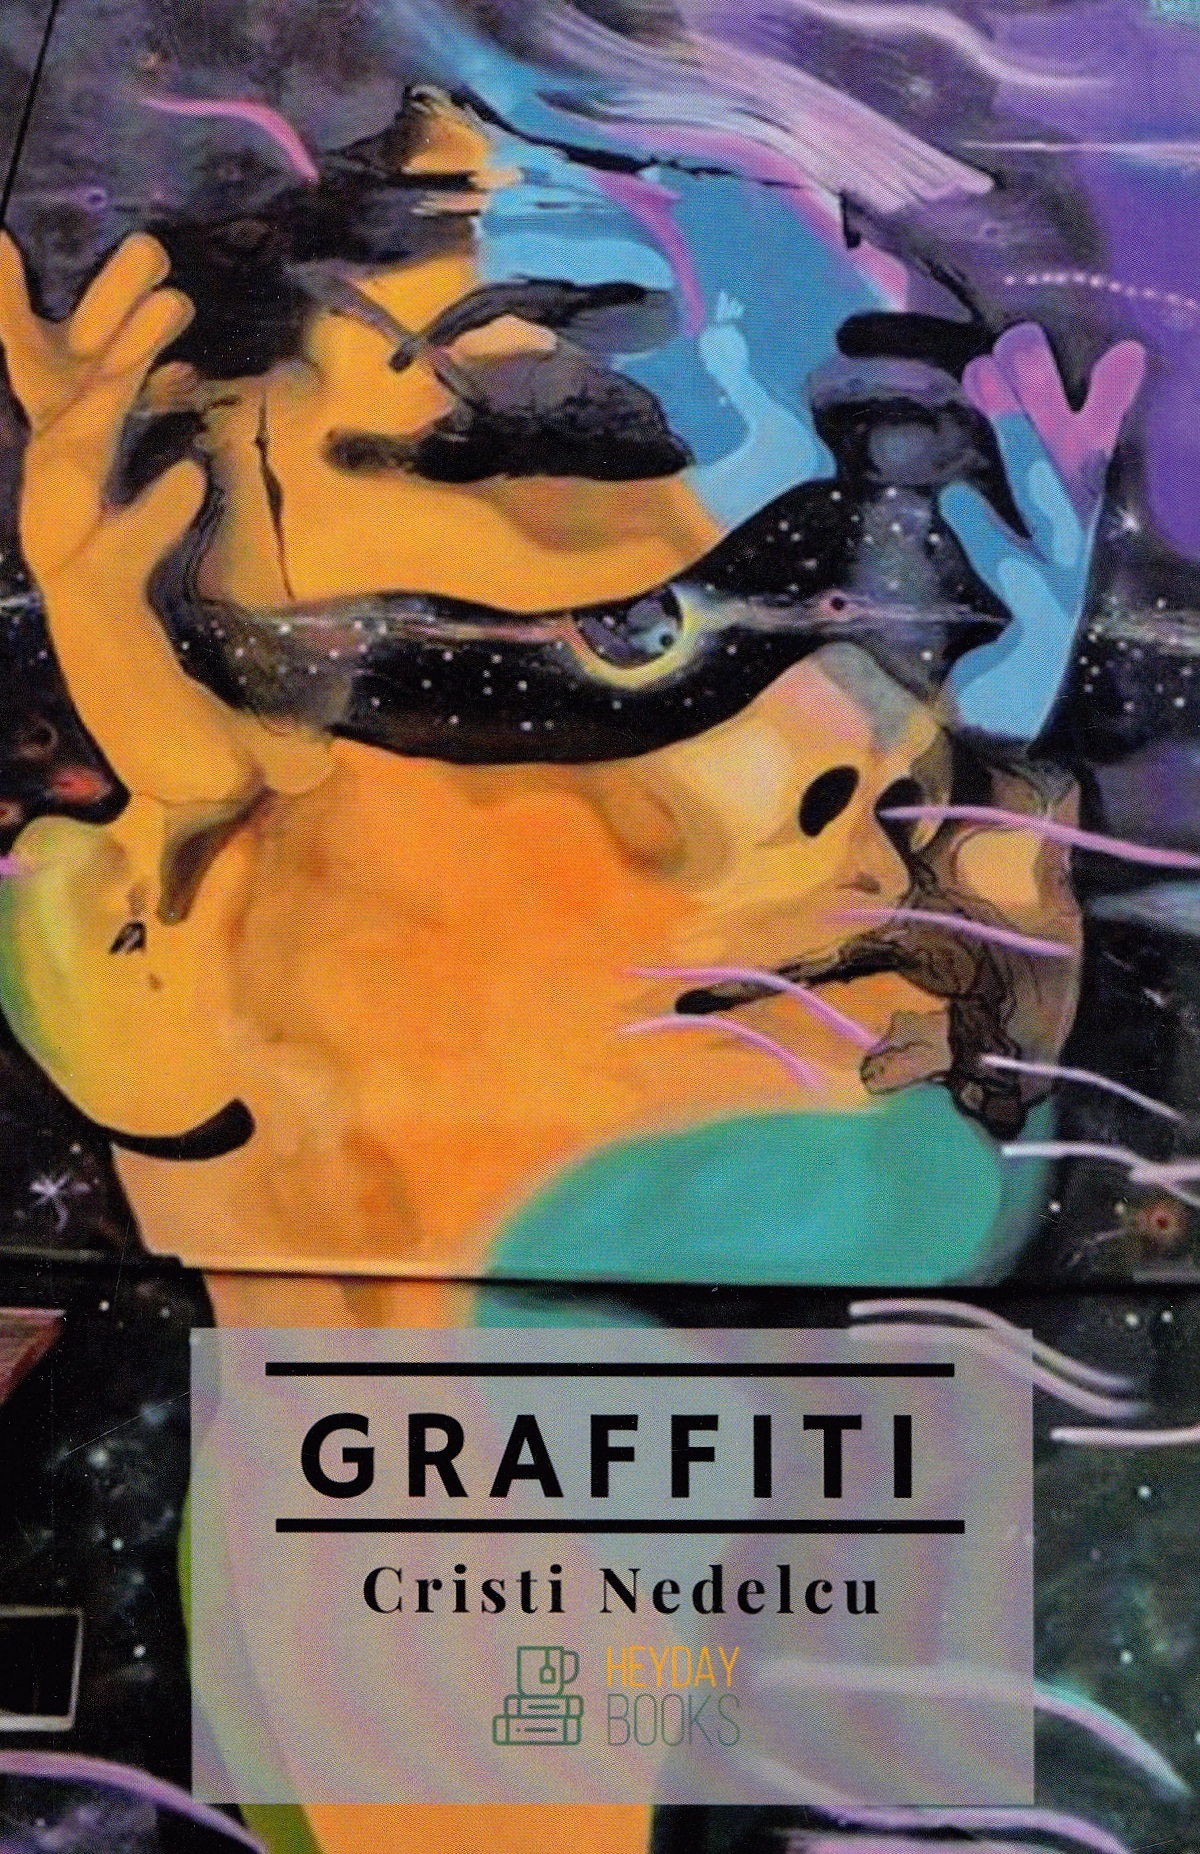 Graffiti - Cristi Nedelcu